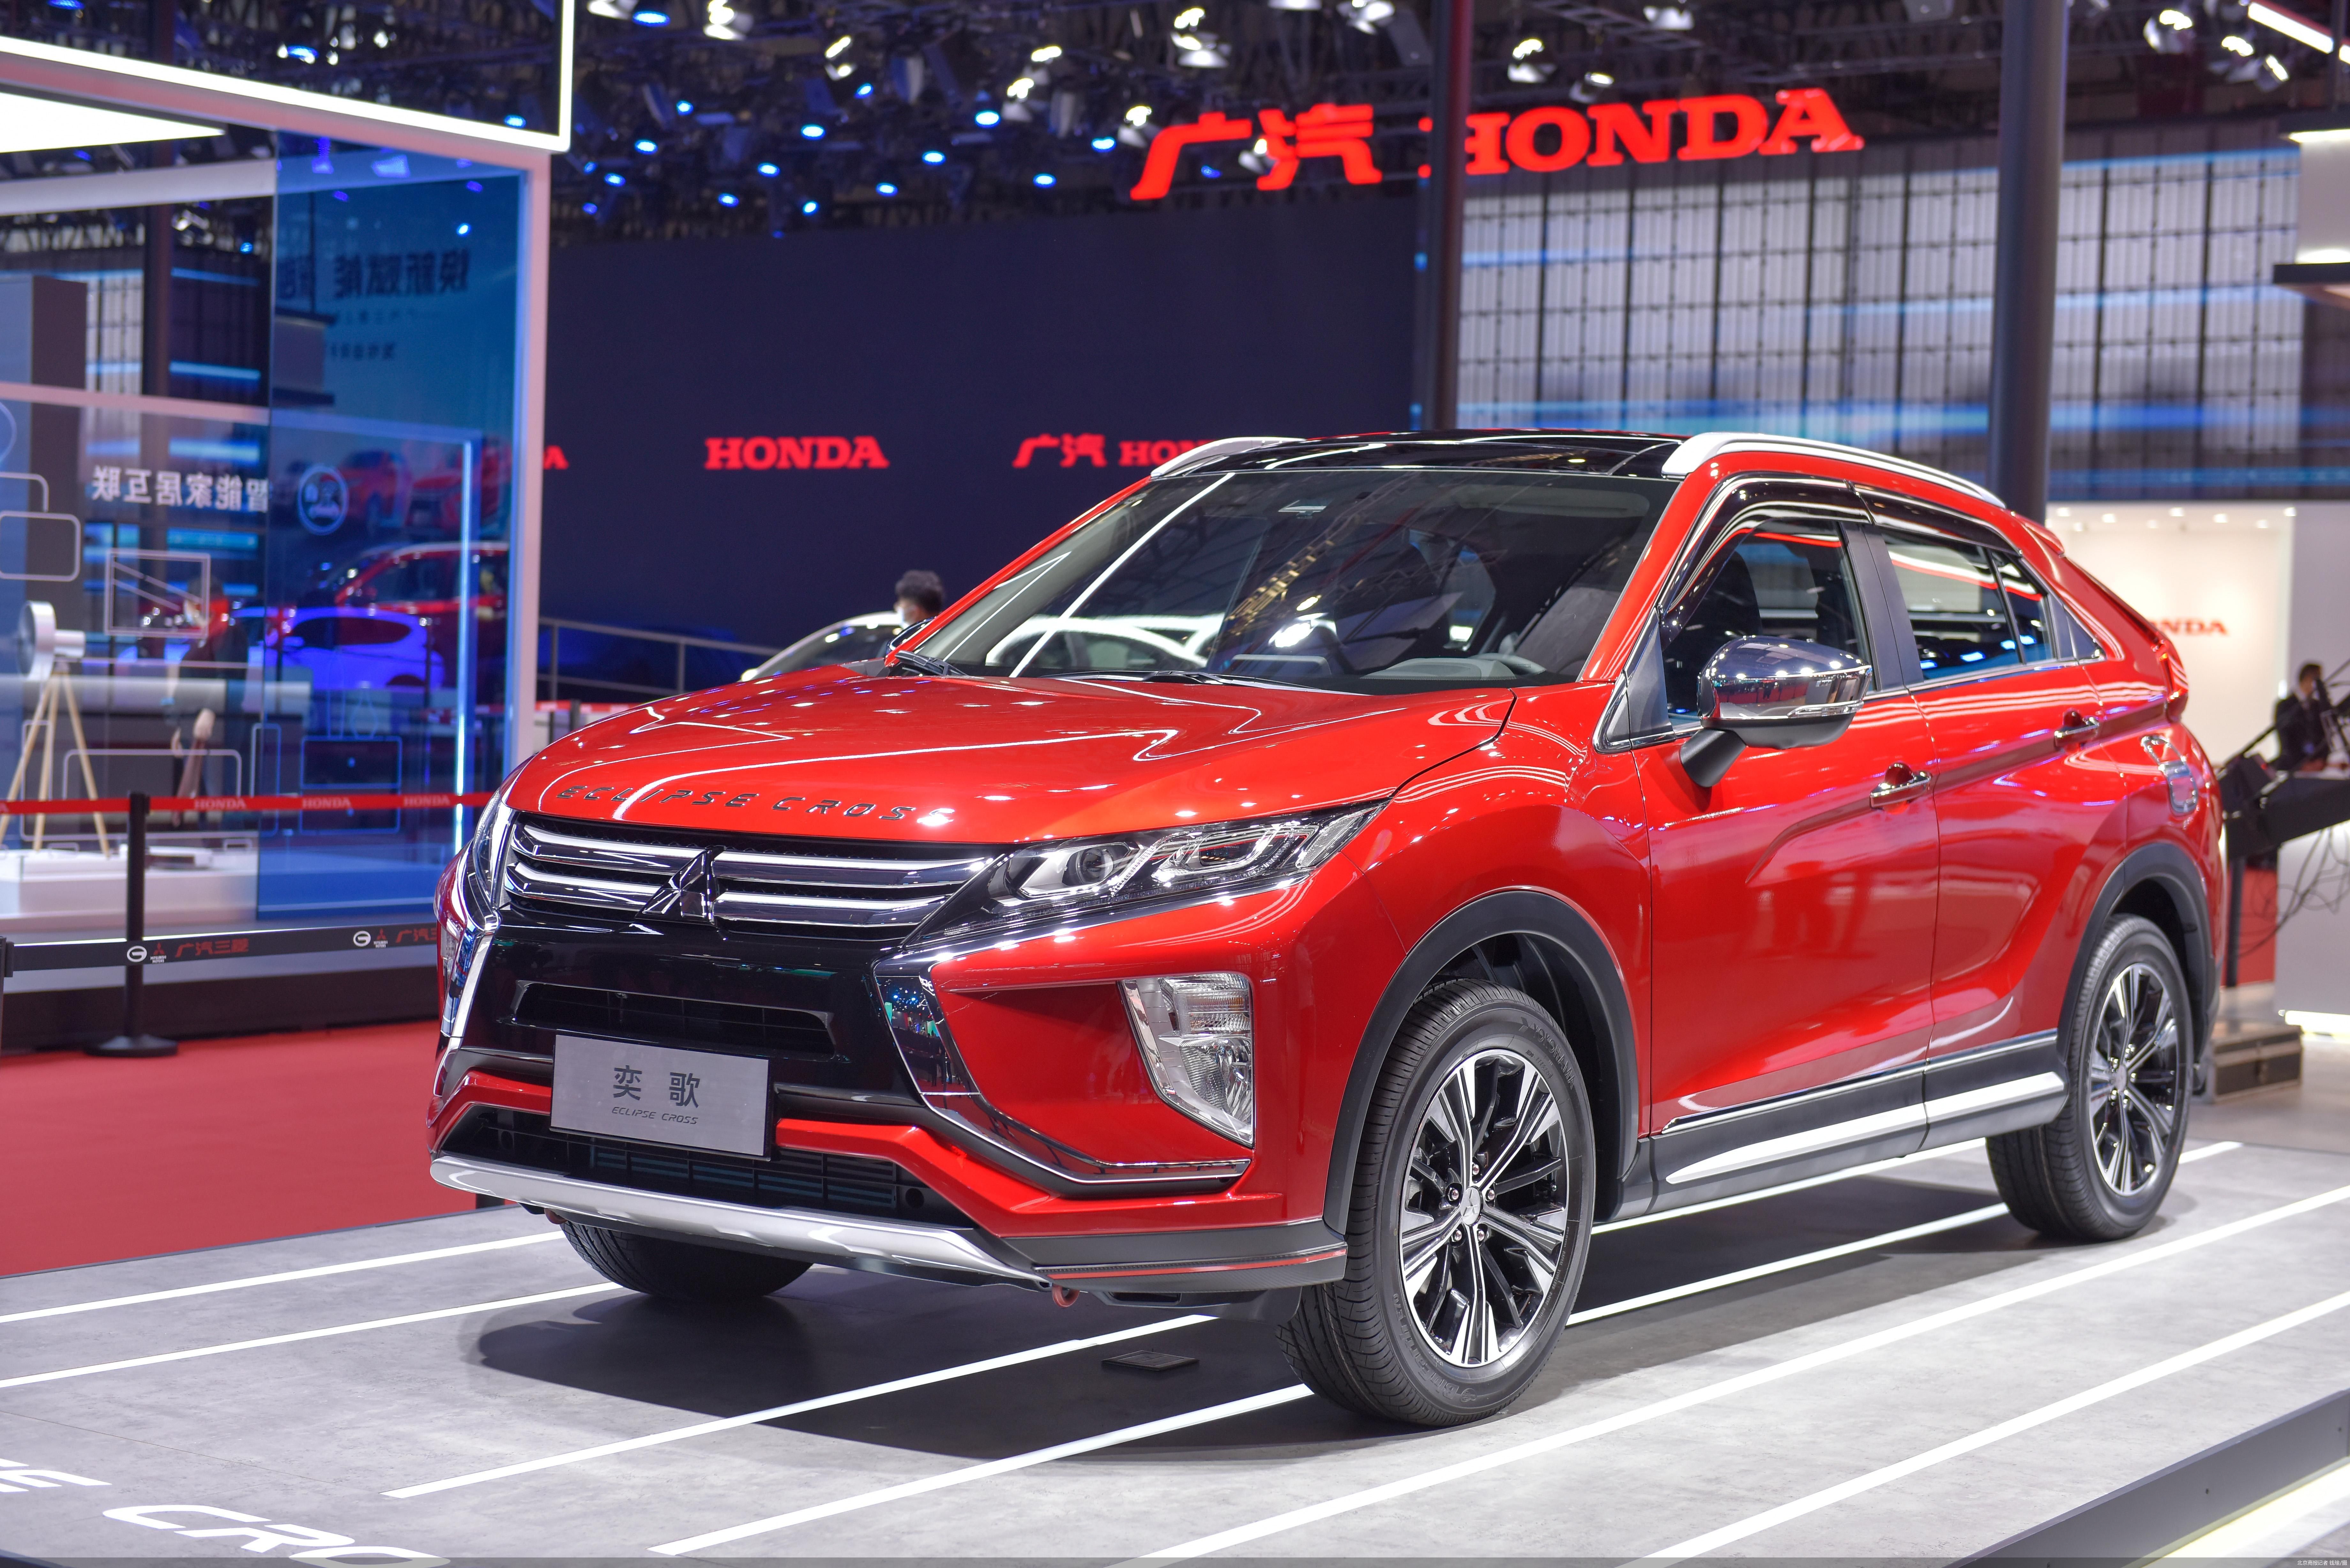 第十九届上海国际汽车工业展览会开幕,广汽三菱发布了全新纯电动车型